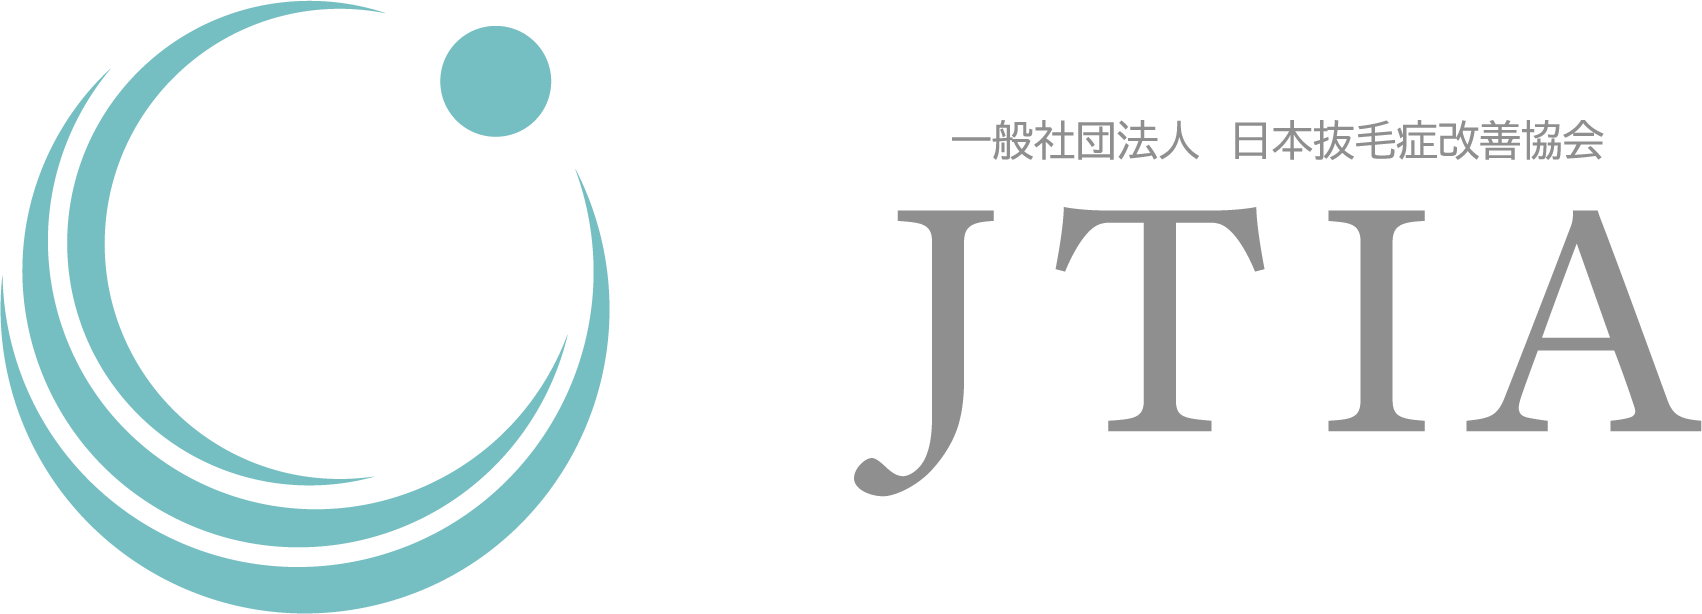 一般社団法人日本抜毛症改善協会のロゴ